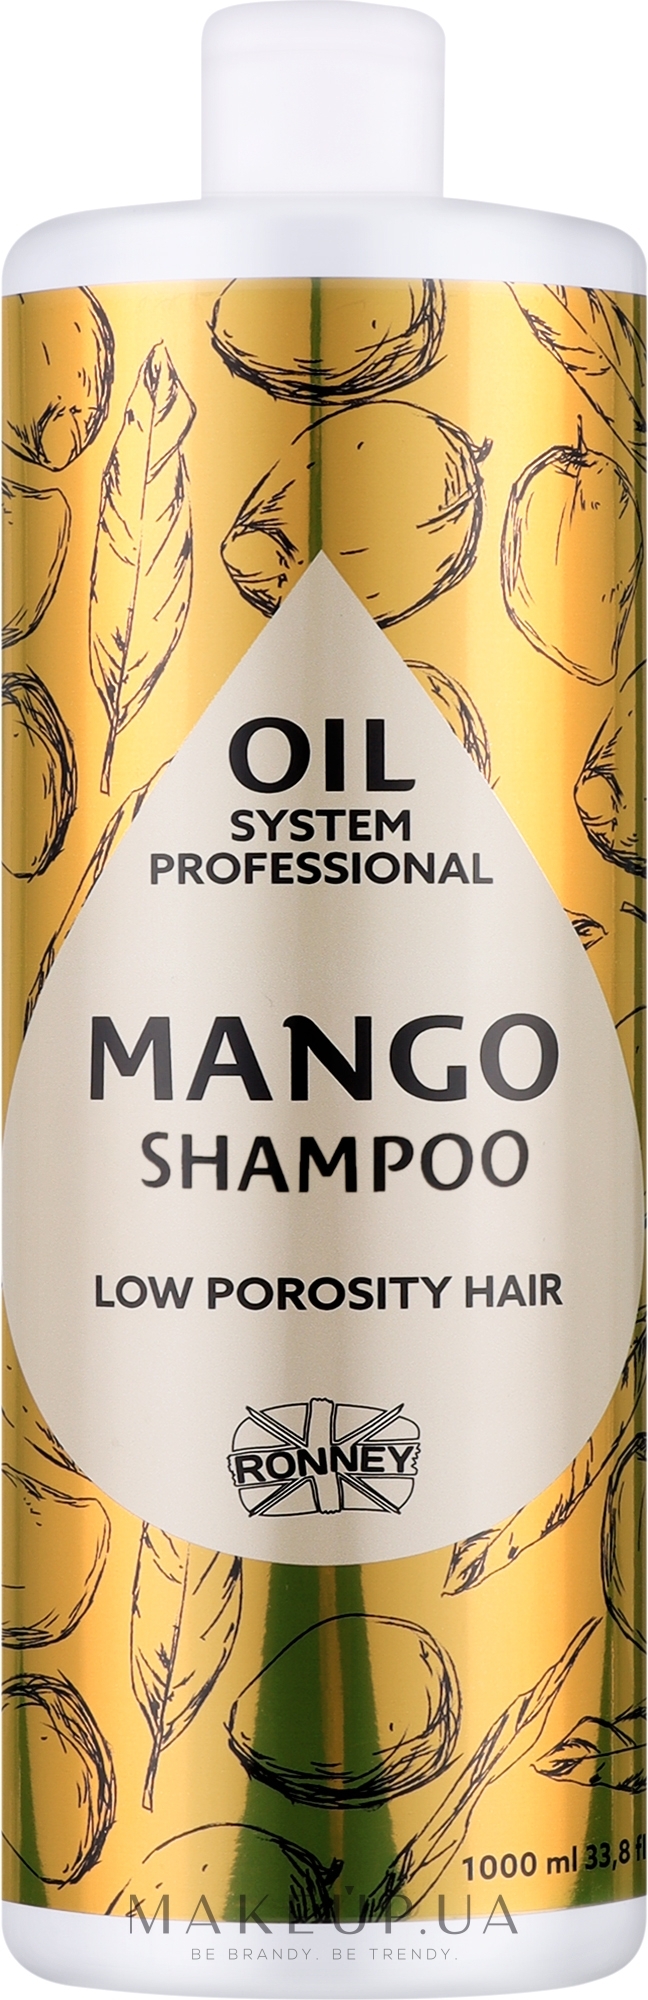 Шампунь для низкопористых волос с маслом манго - Ronney Professional Oil System Low Porosity Hair Mango Shampoo — фото 1000ml